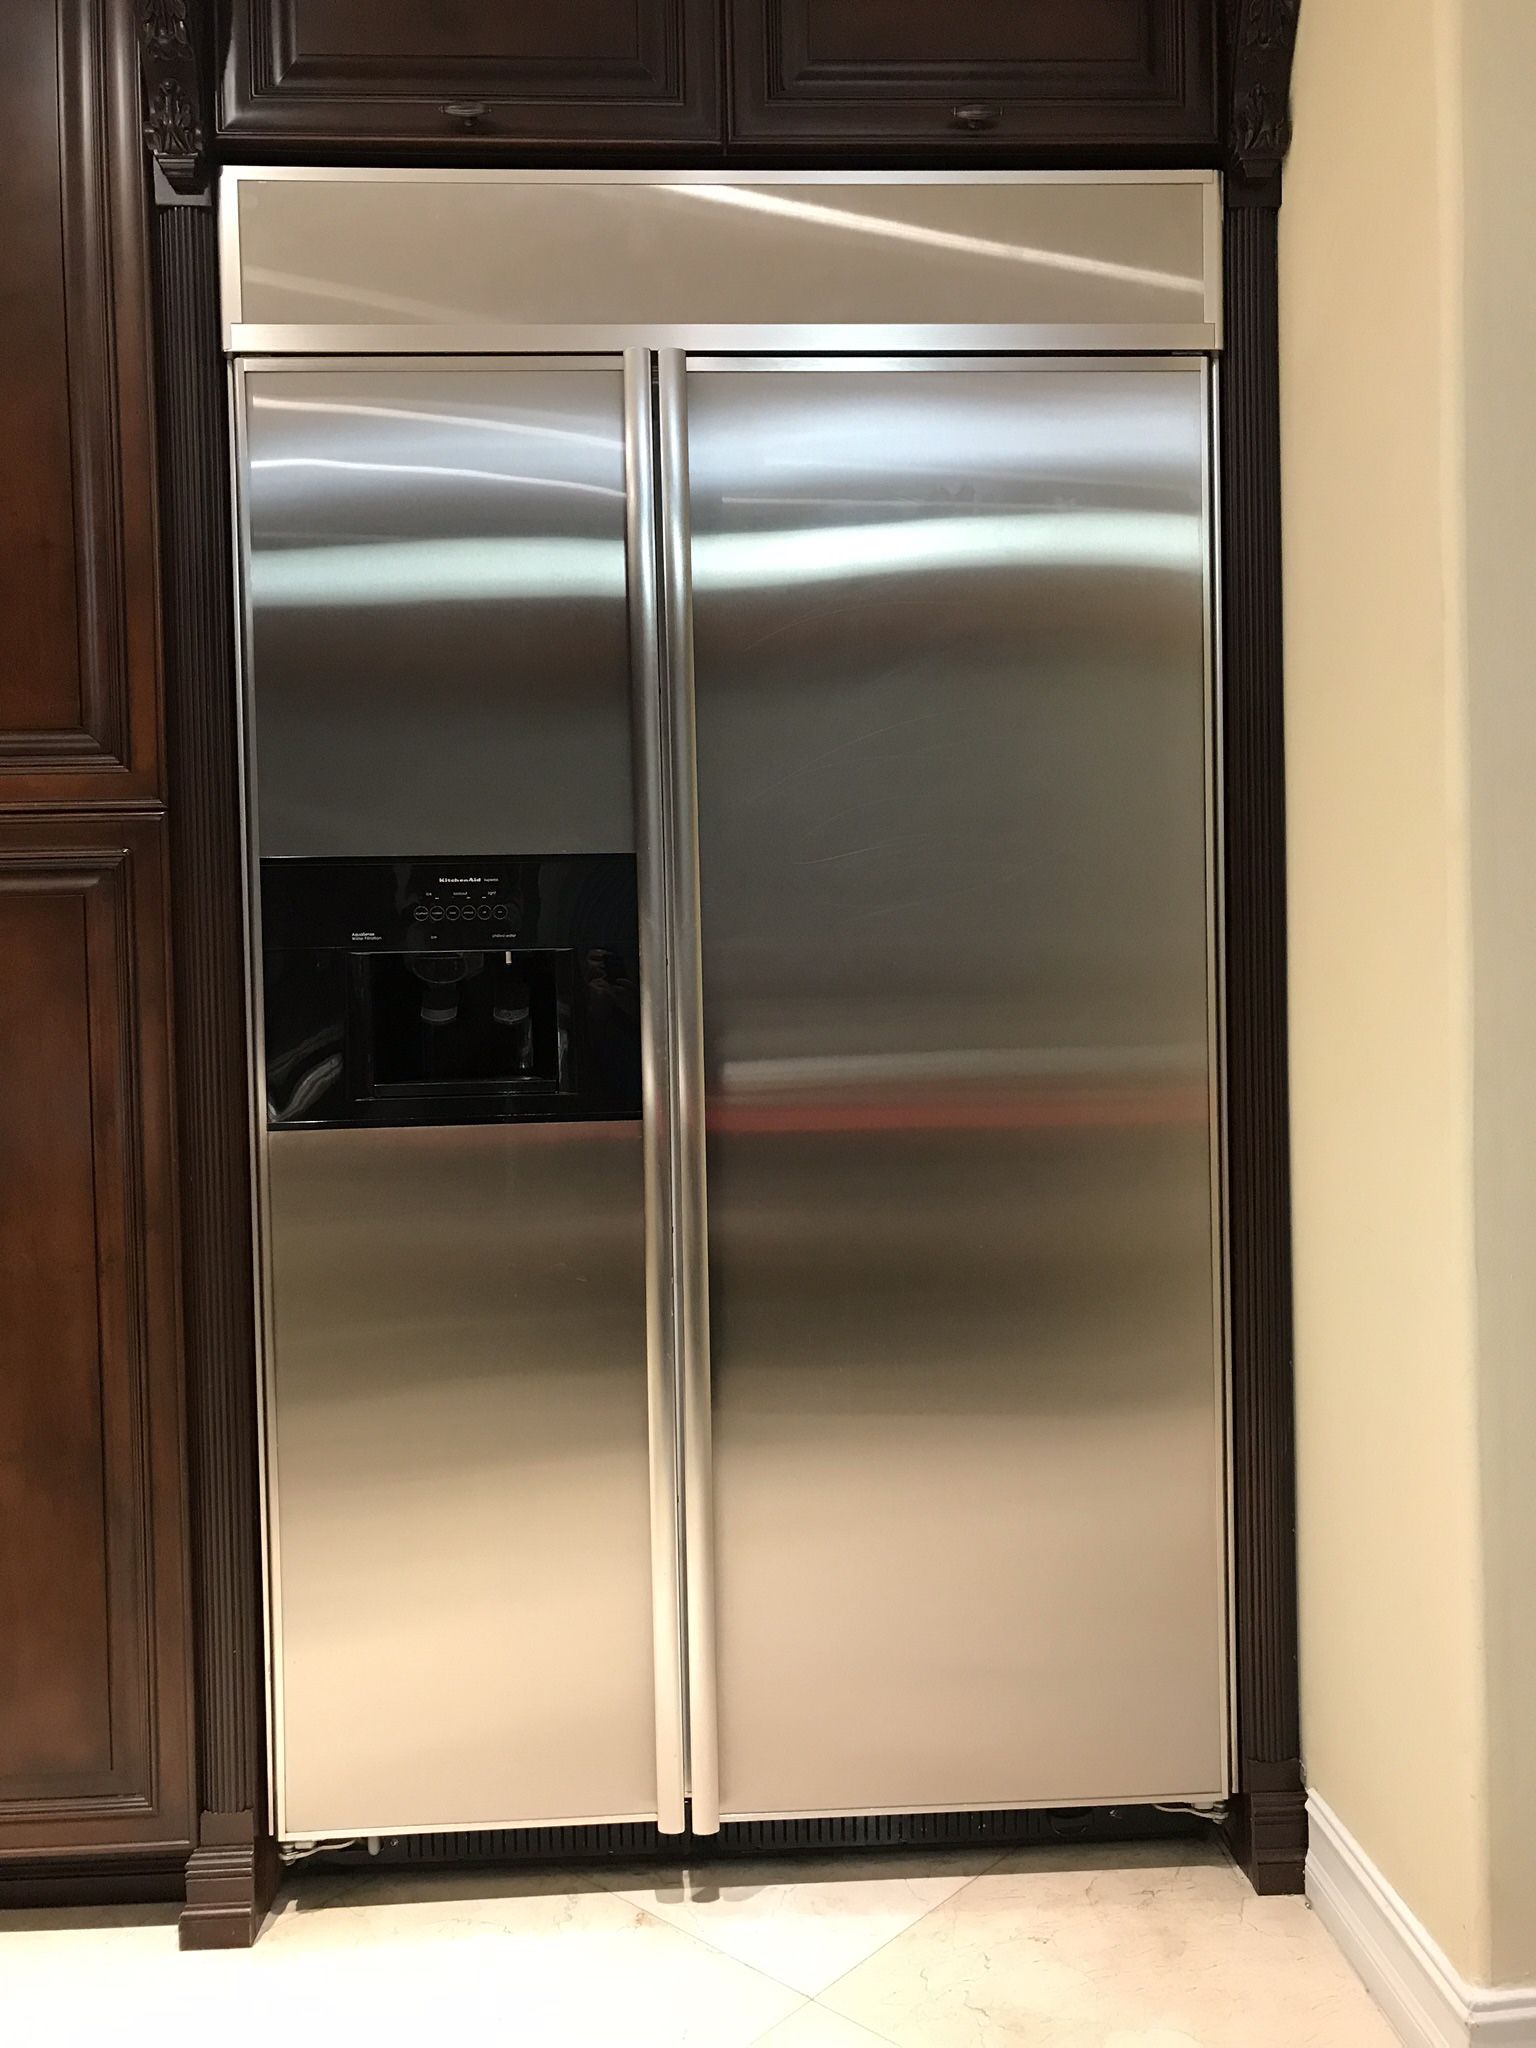 Kitchen Aid refrigerator 29.8 cu. ft 48" width